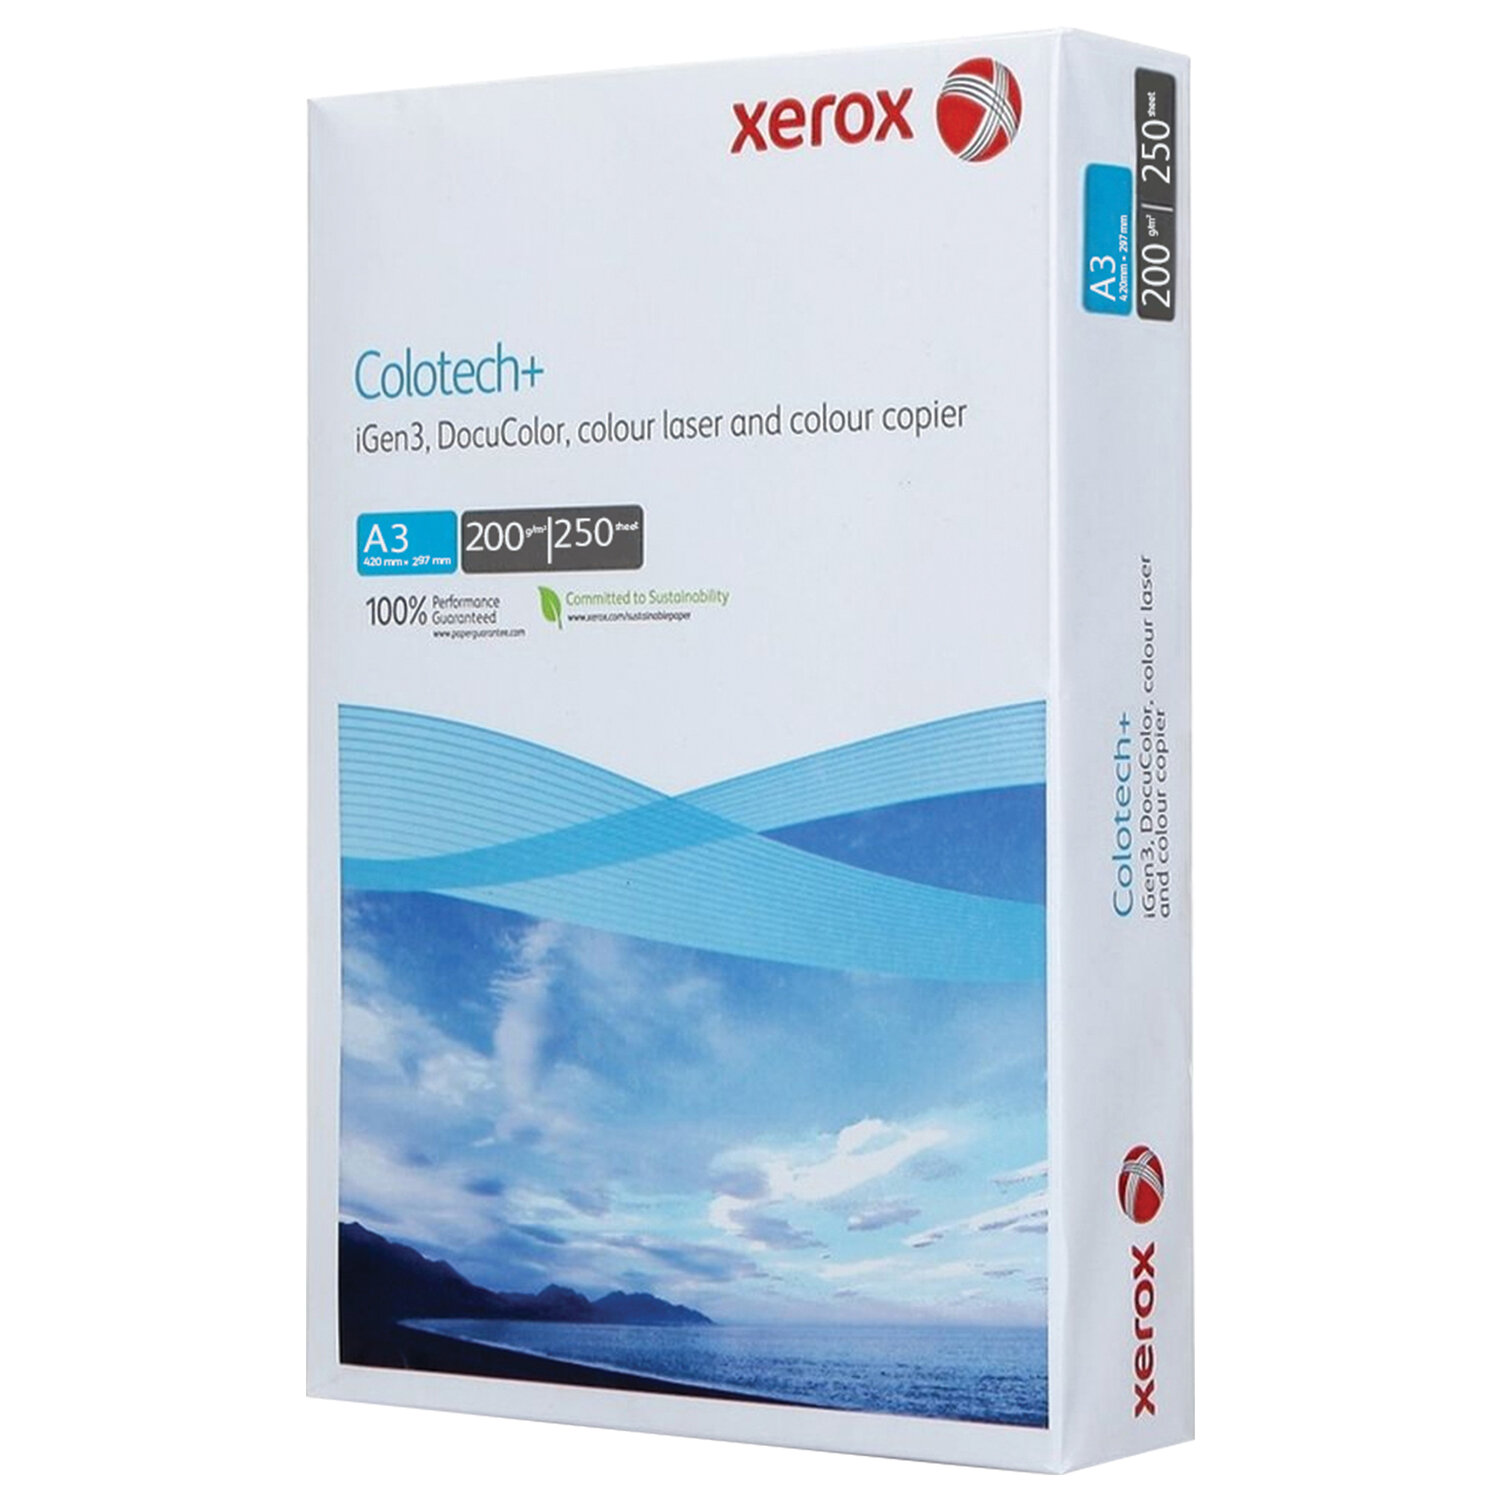      XEROX COLOTECH+ Blue, 3, 200 /2, 250 ., 161% CIE, 003R94662